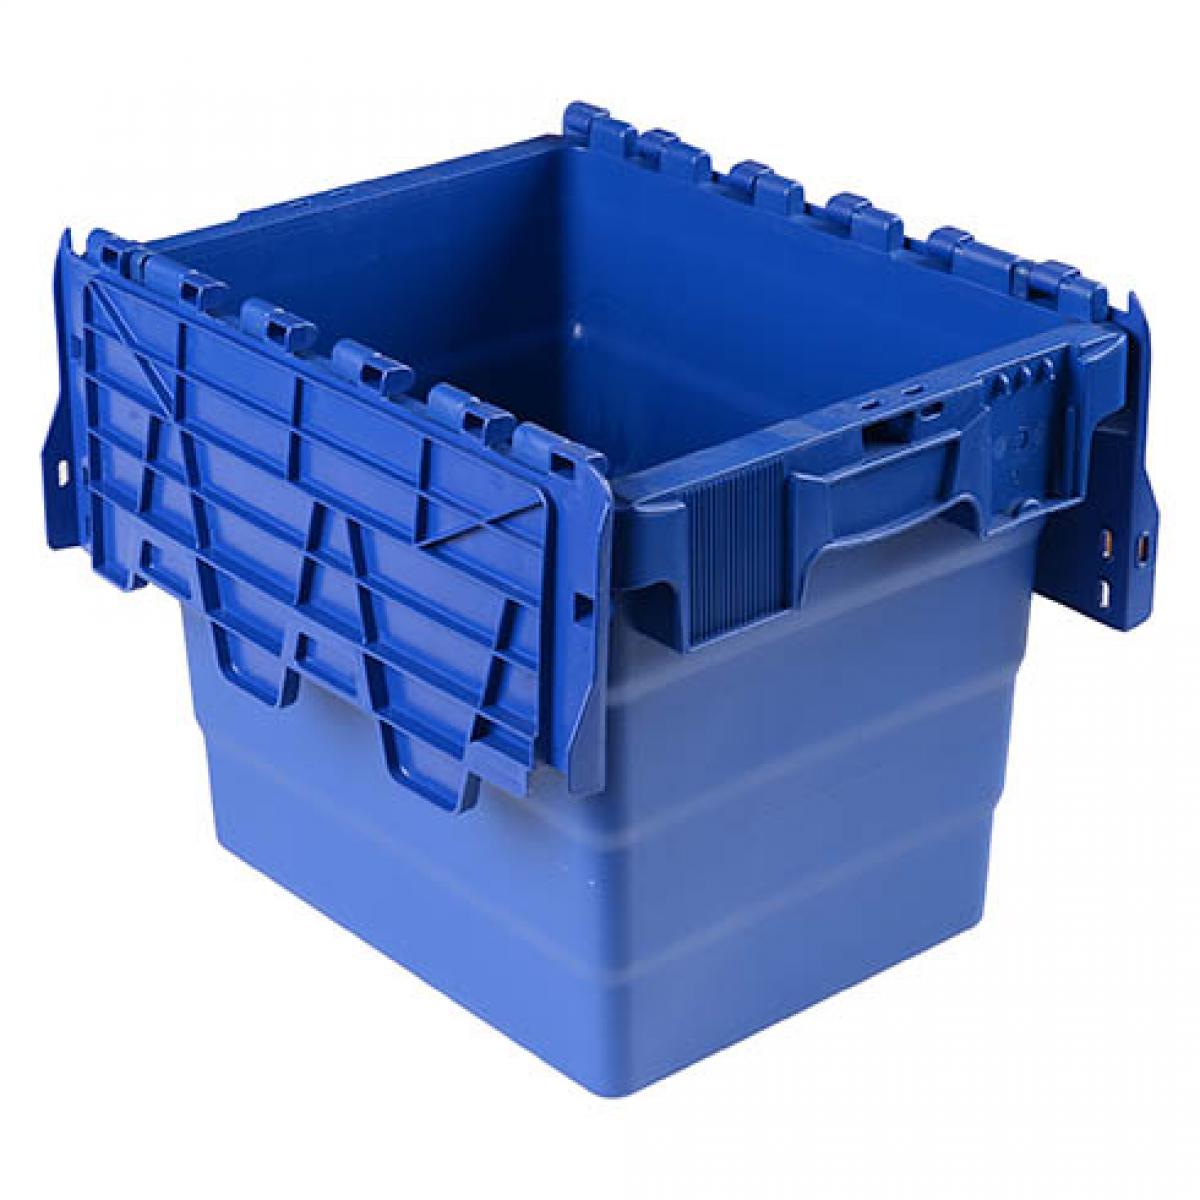 Viso - Bac de stockage navette avec couvercle en plastique bleu - 27 litres - Diable, chariot